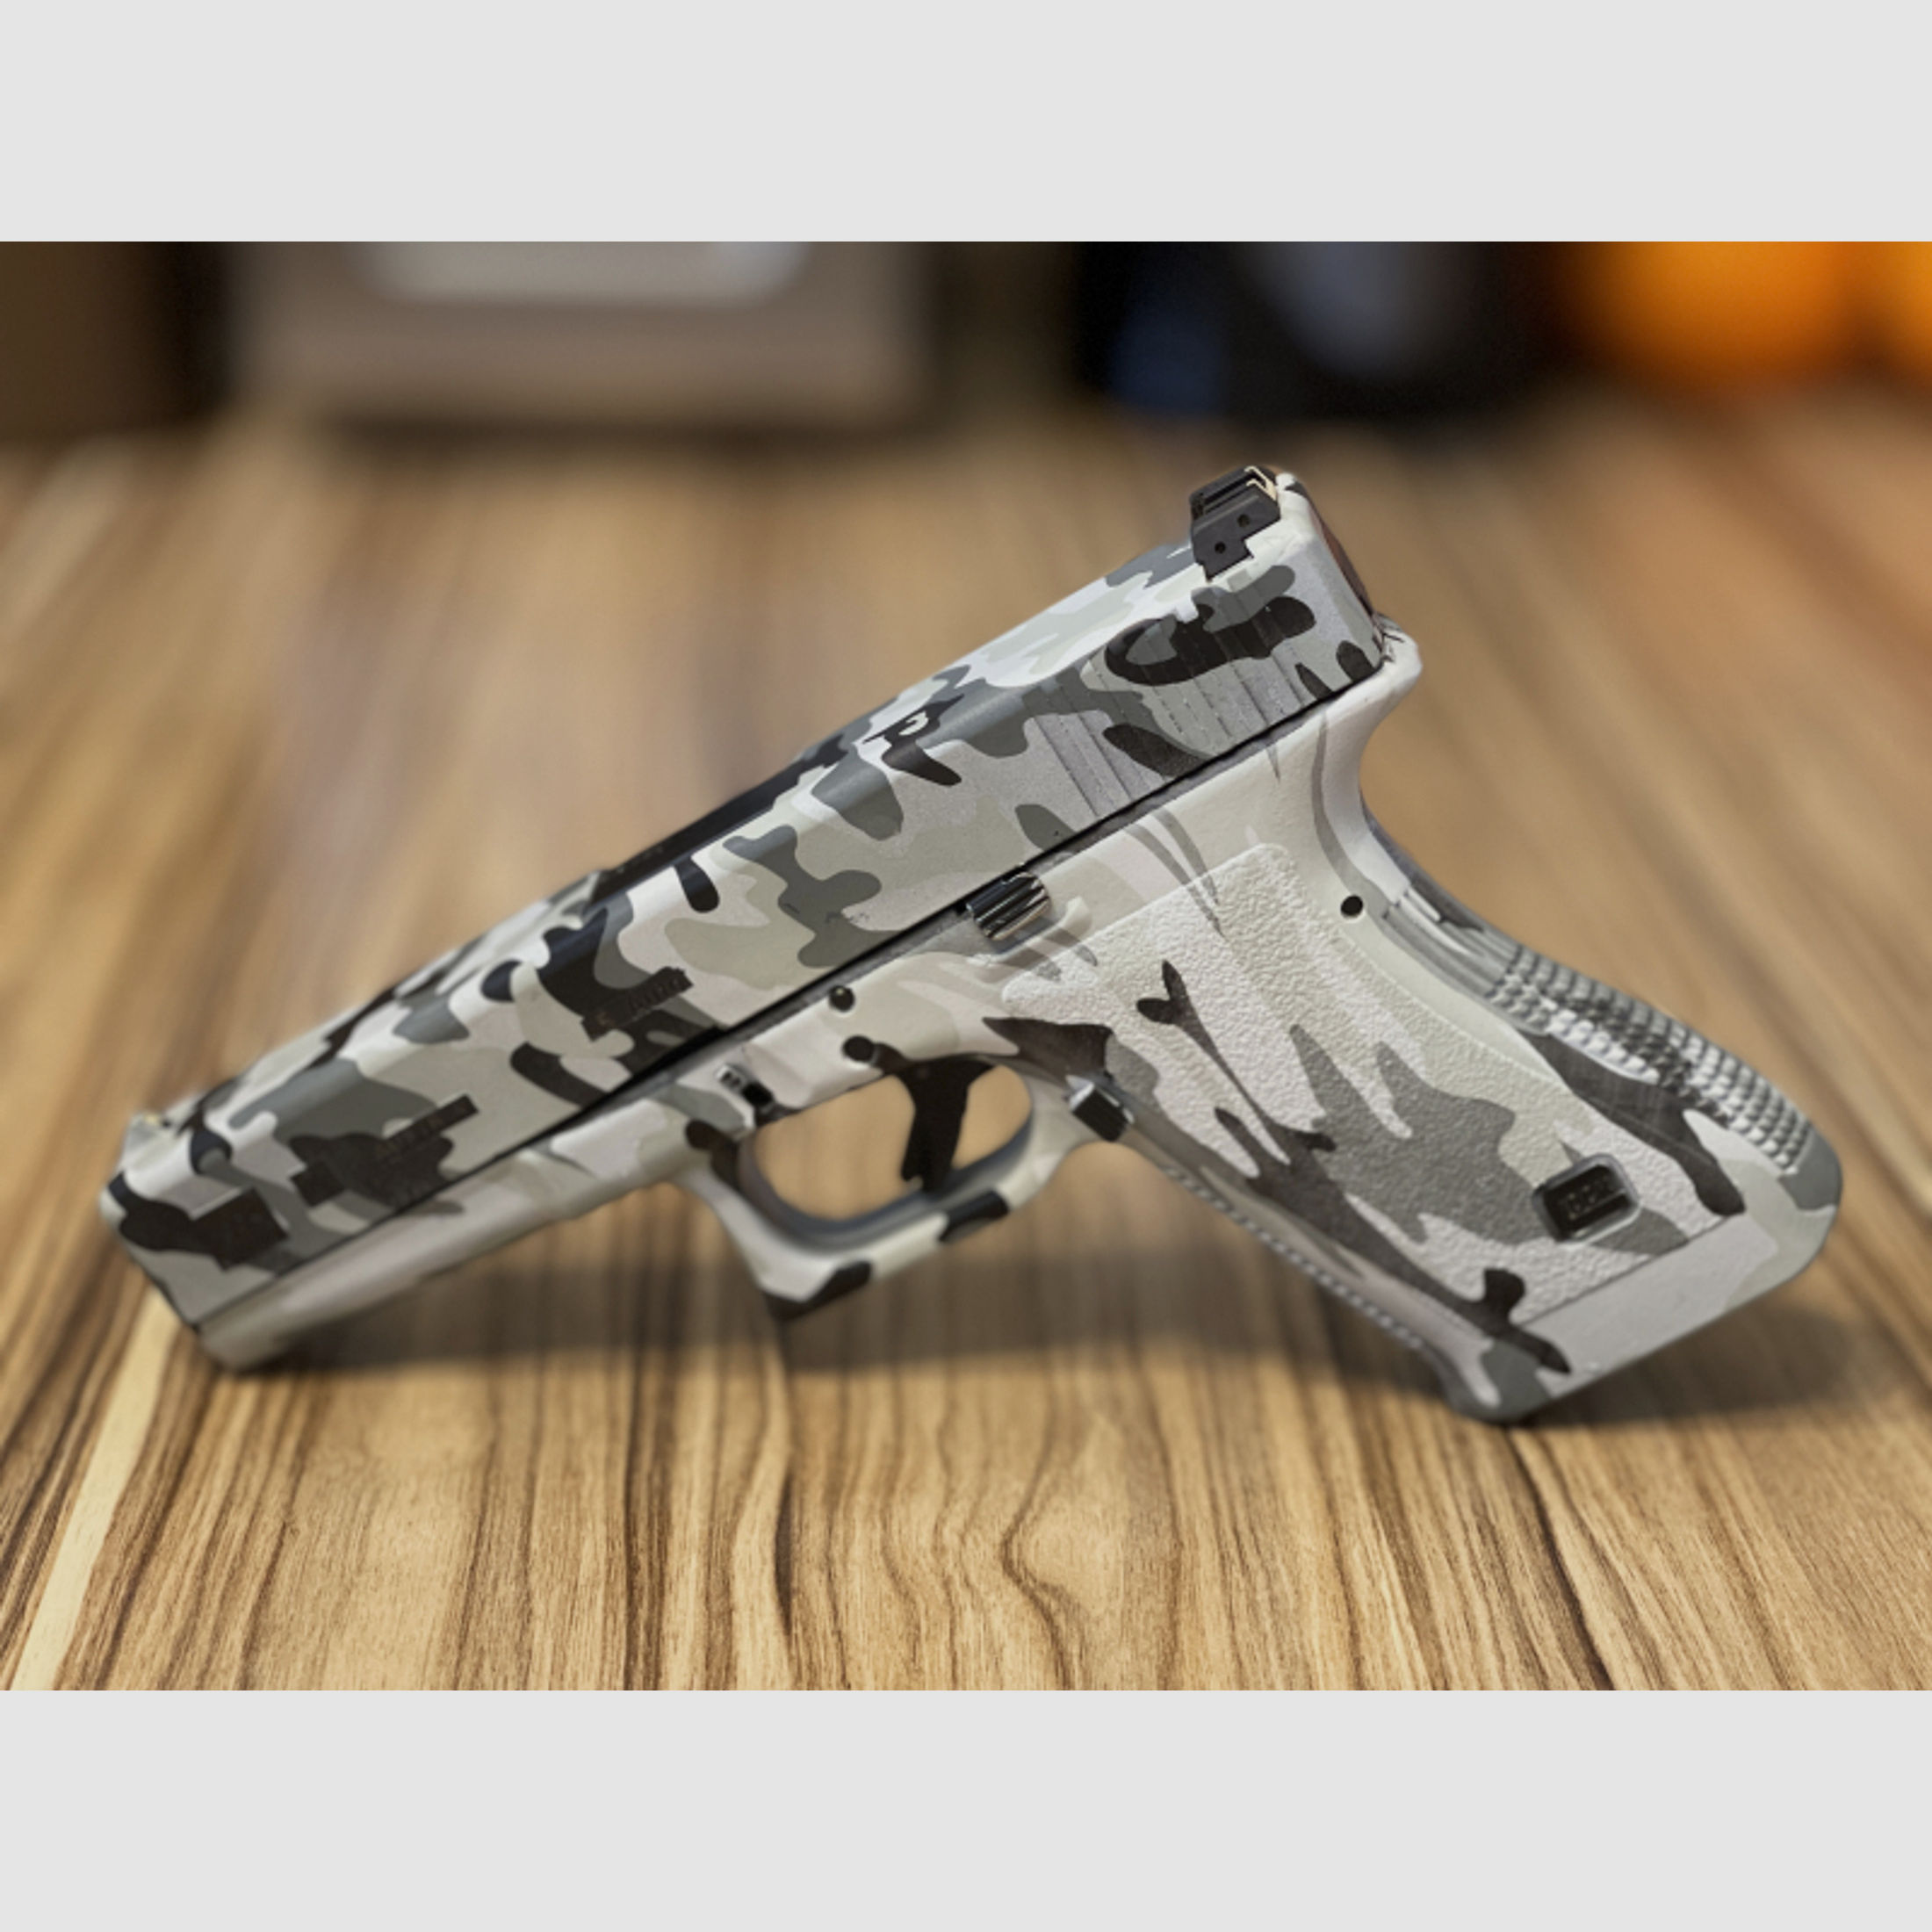 Glock Modell 21 | GEN 2 | Kal. 45 ACP